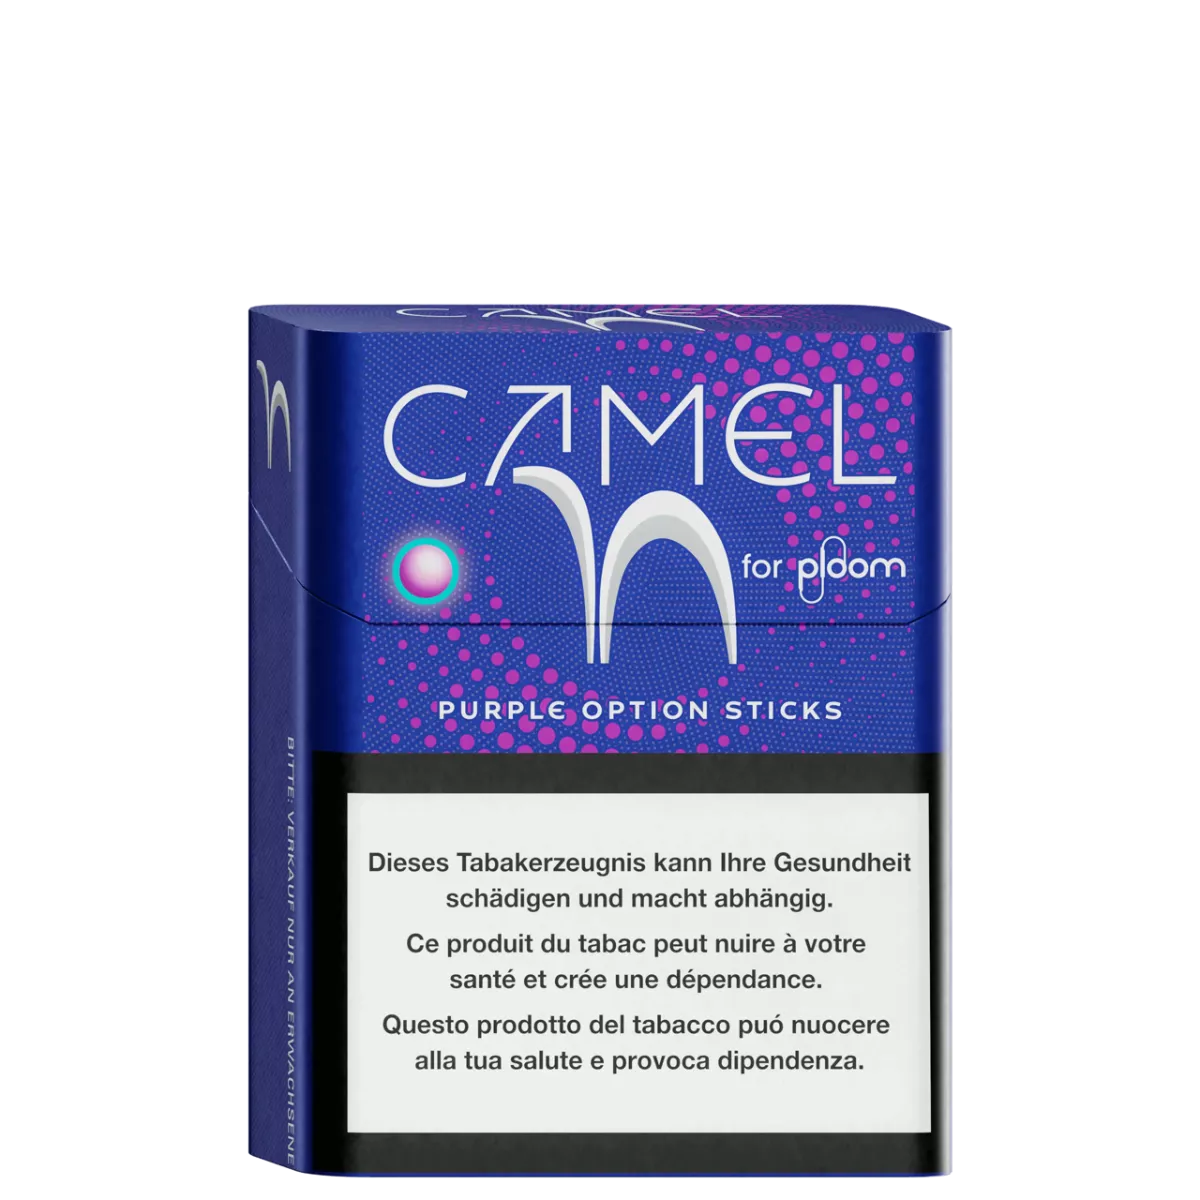 Camel Purple option sticks pour ploom X advanced